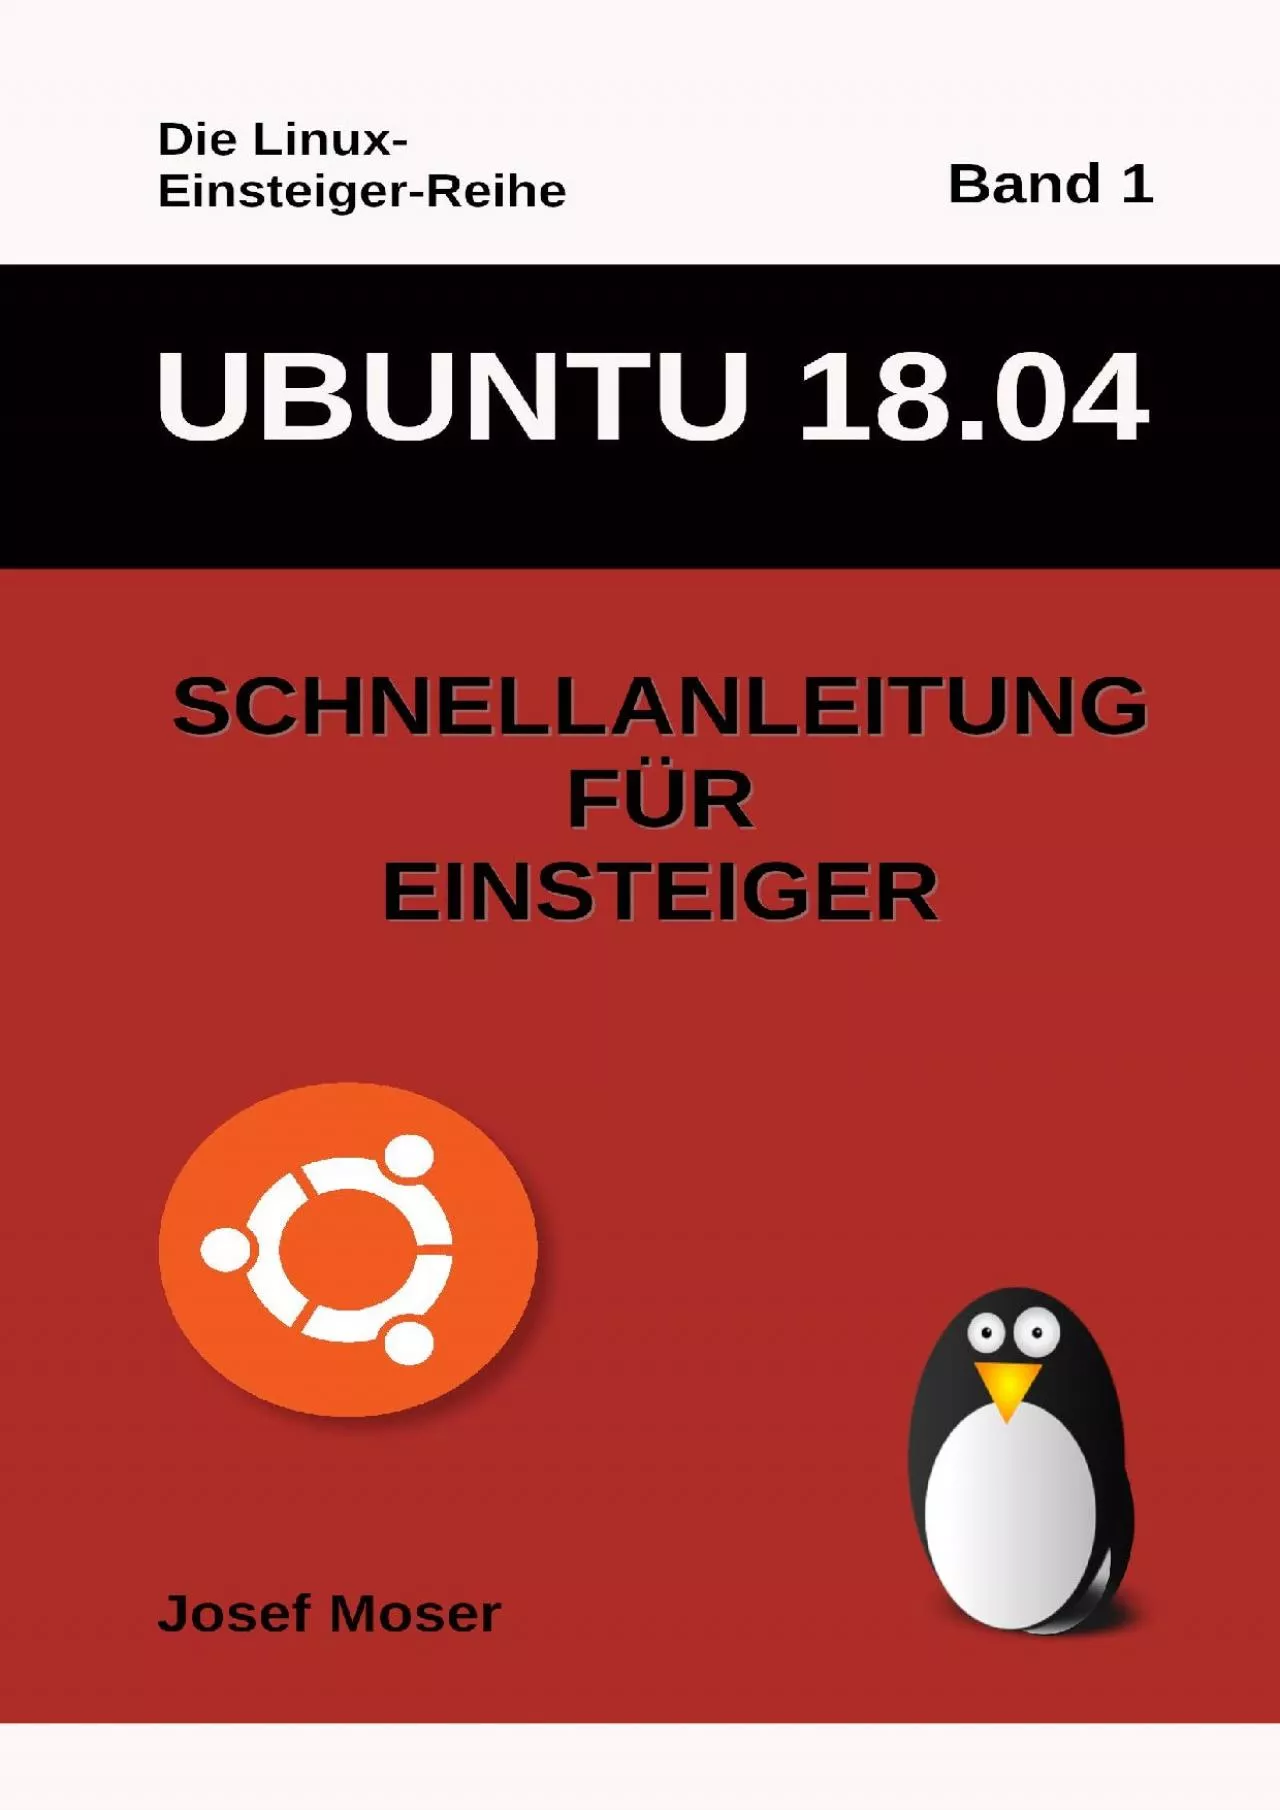 (BOOK)-Ubuntu 1804 Schnellanleitung für Einsteiger (Die Linux-Einsteiger-Reihe 1) (German